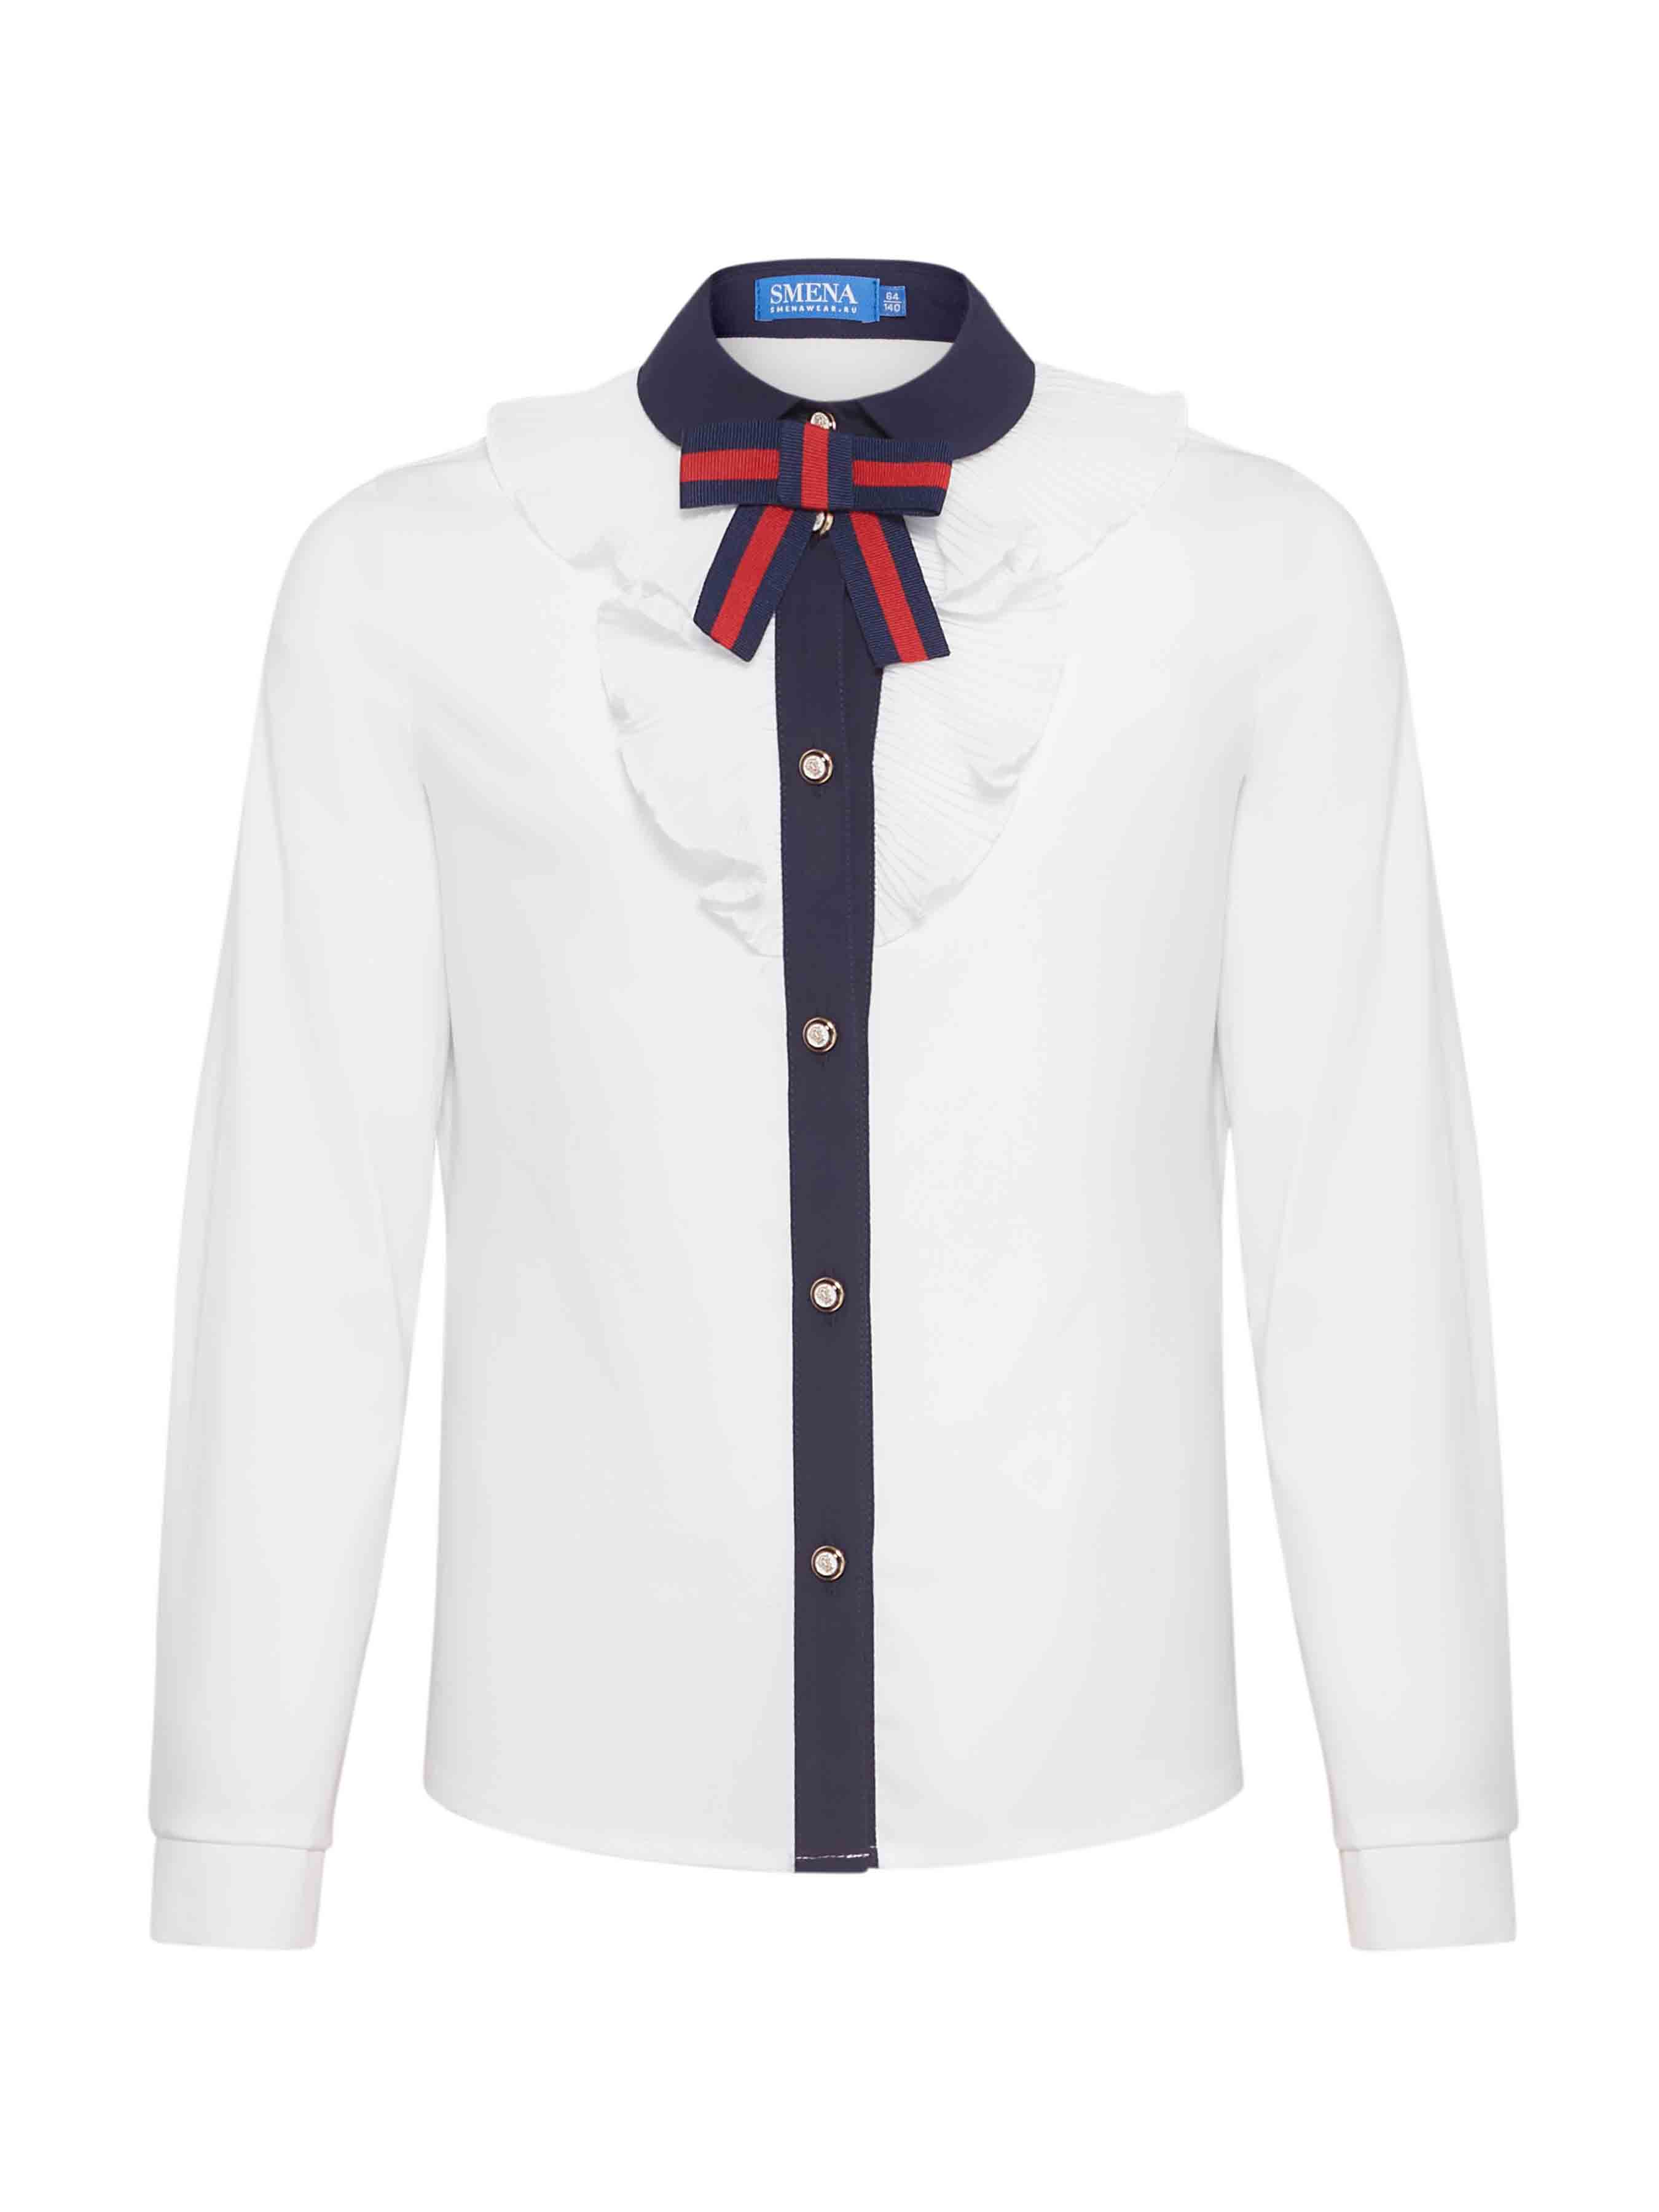 Школьная блузка для девочки белая 12792